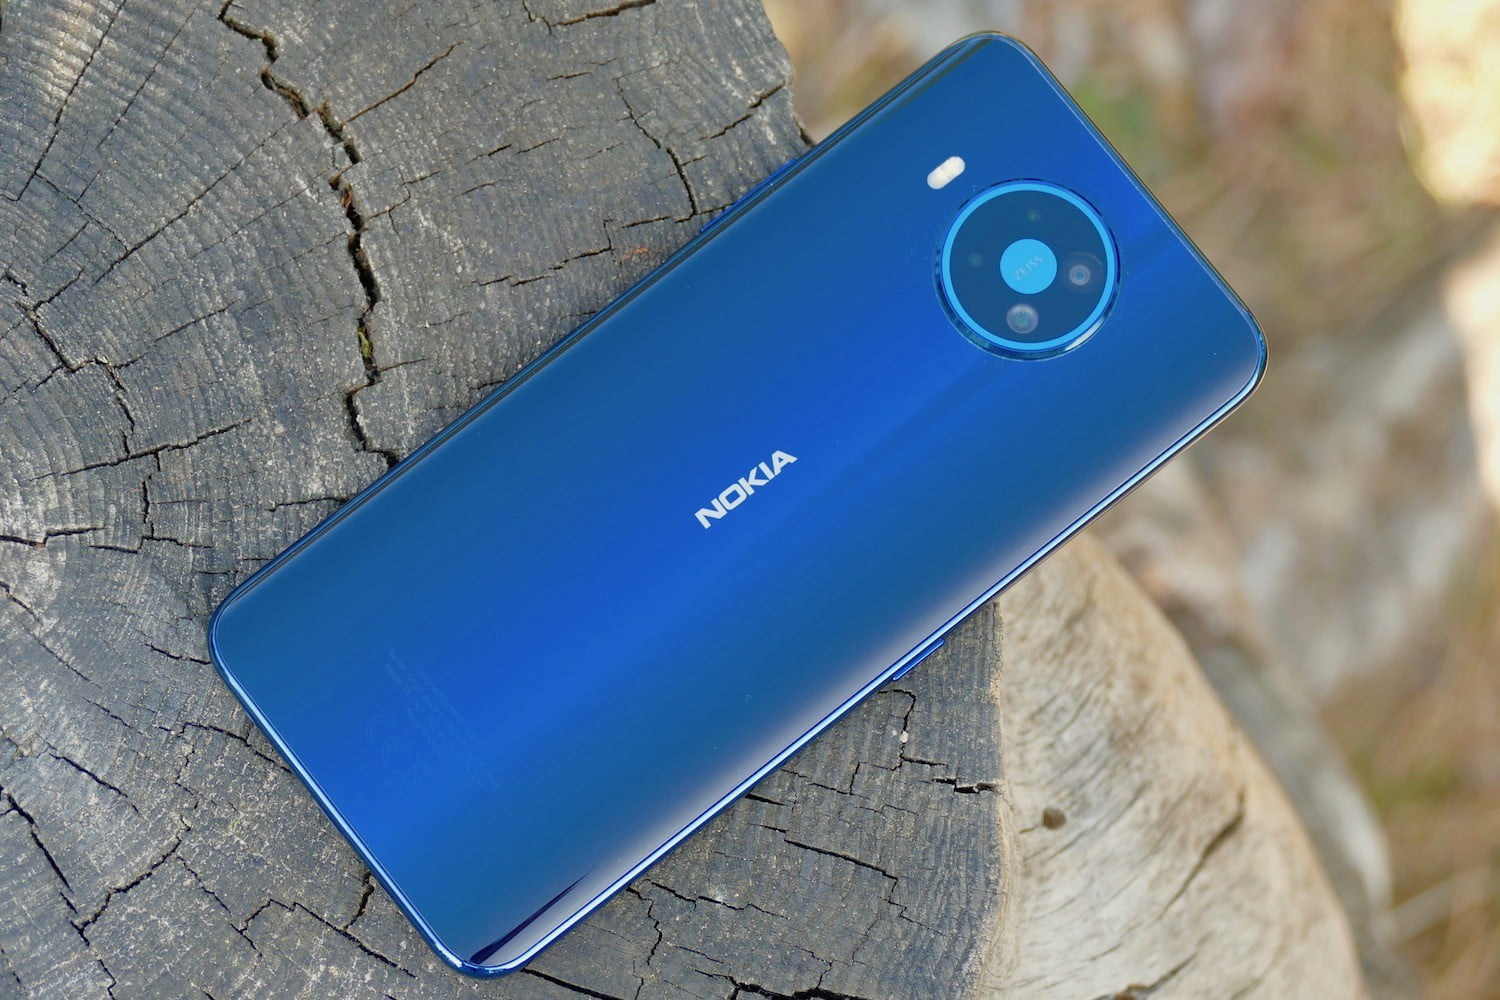 HMD lanzó 4 nuevos smartphones Nokia, incluyendo el primero 5G 2020